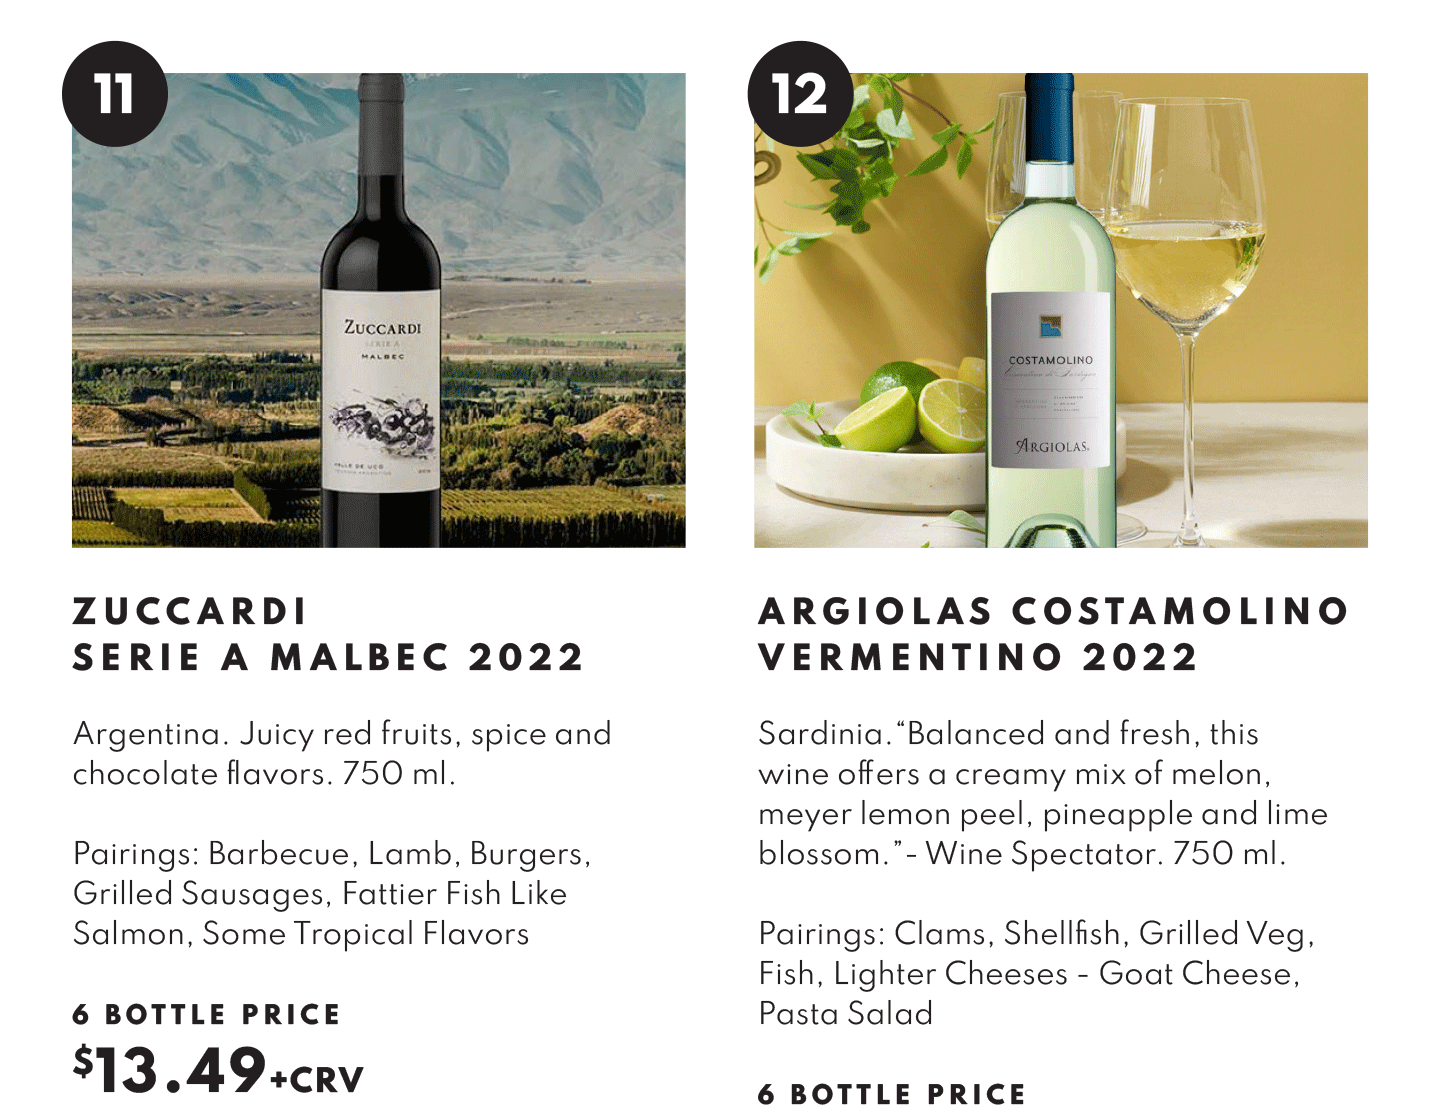 Zuccardi Serie A Malbev 2022, $13.49 - 6 bottle price and Argiolas Cosamolino Vermentino 2022 $13.49 - 6 bottle price